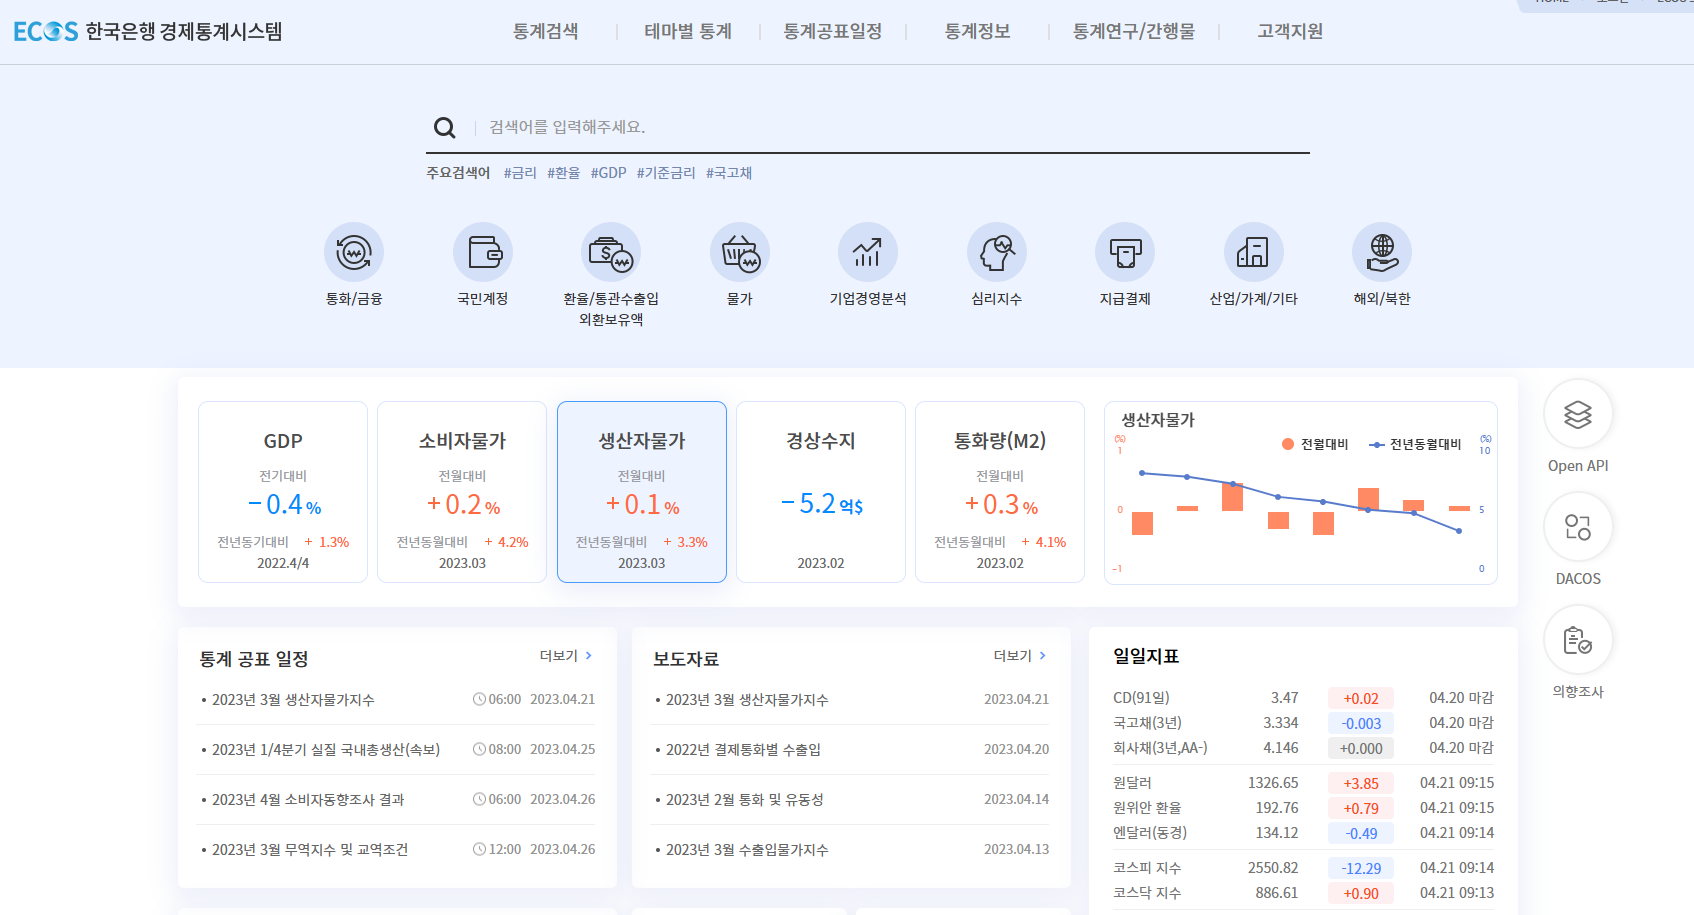 한국은행 경제통계시스템에서 제공하는 정보